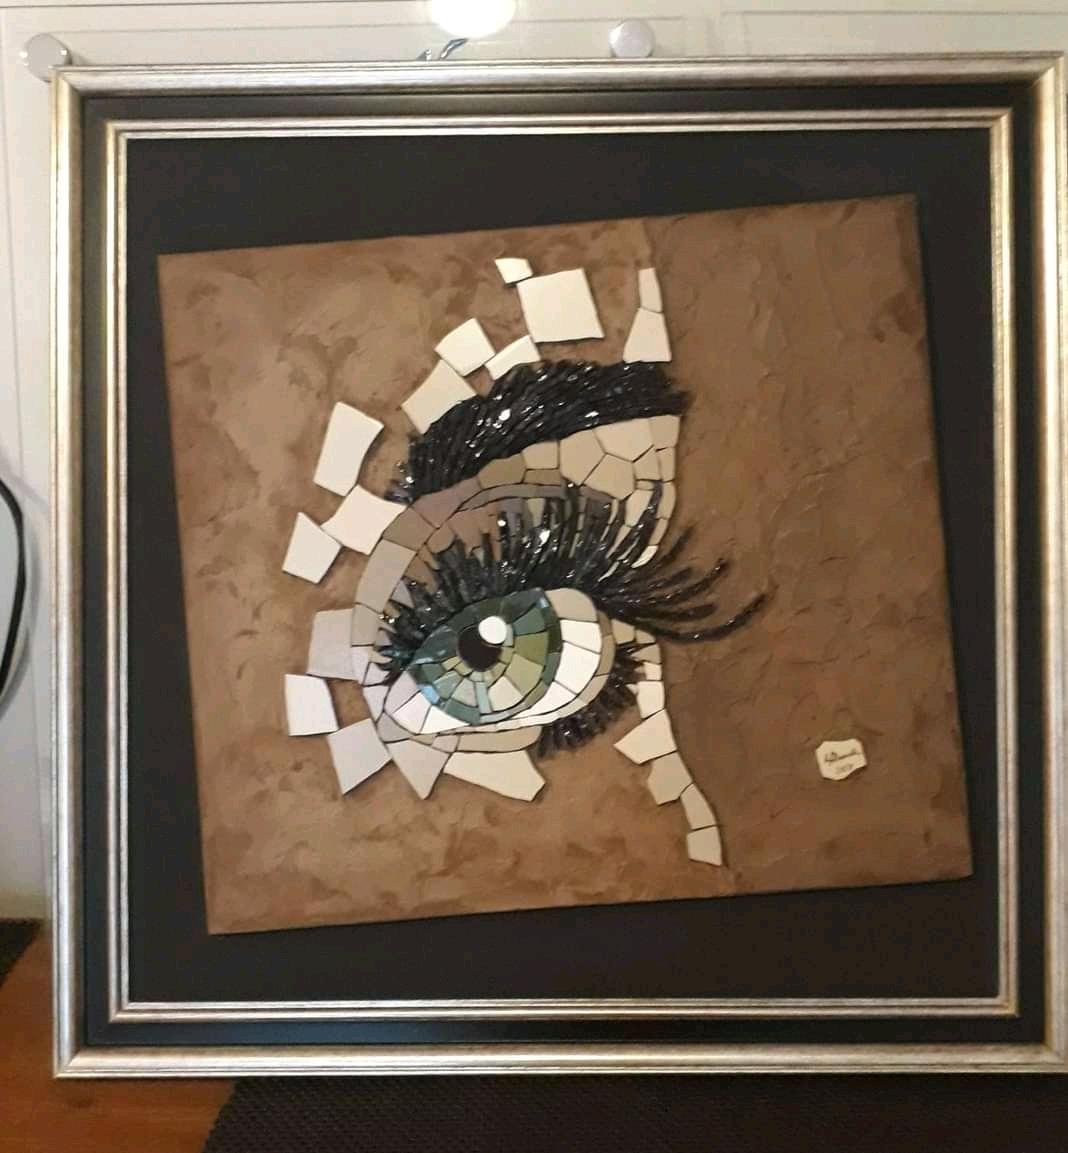 Exposição Quebrar e Realizar apresenta a autêntica produção do trabalho artístico com o mosaico